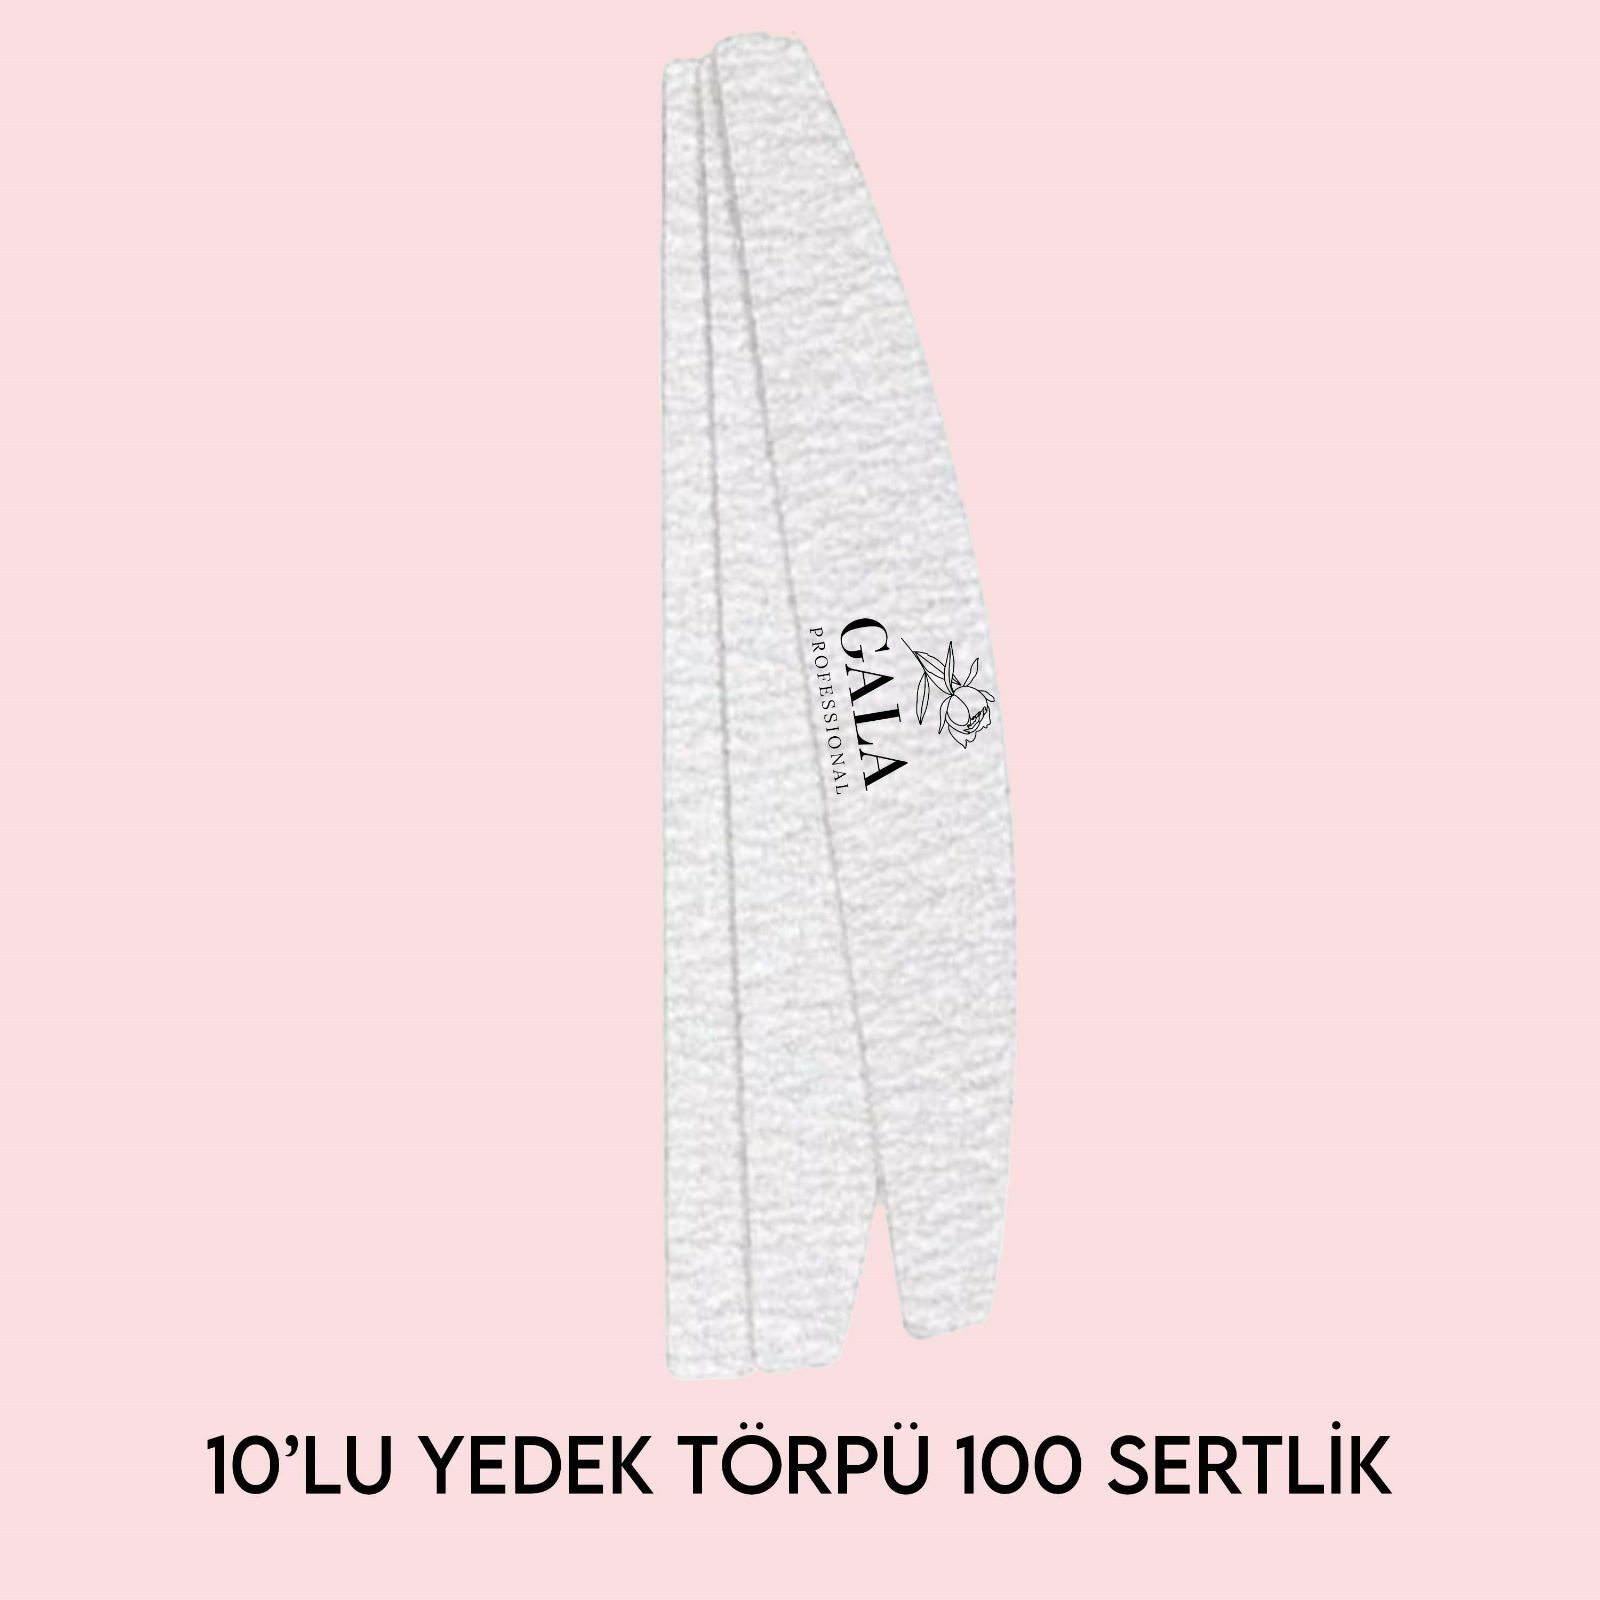 10 LU YEDEK TÖRPÜ - KIVRIMLI MODEL UYUMLU - 100 SERTLİK